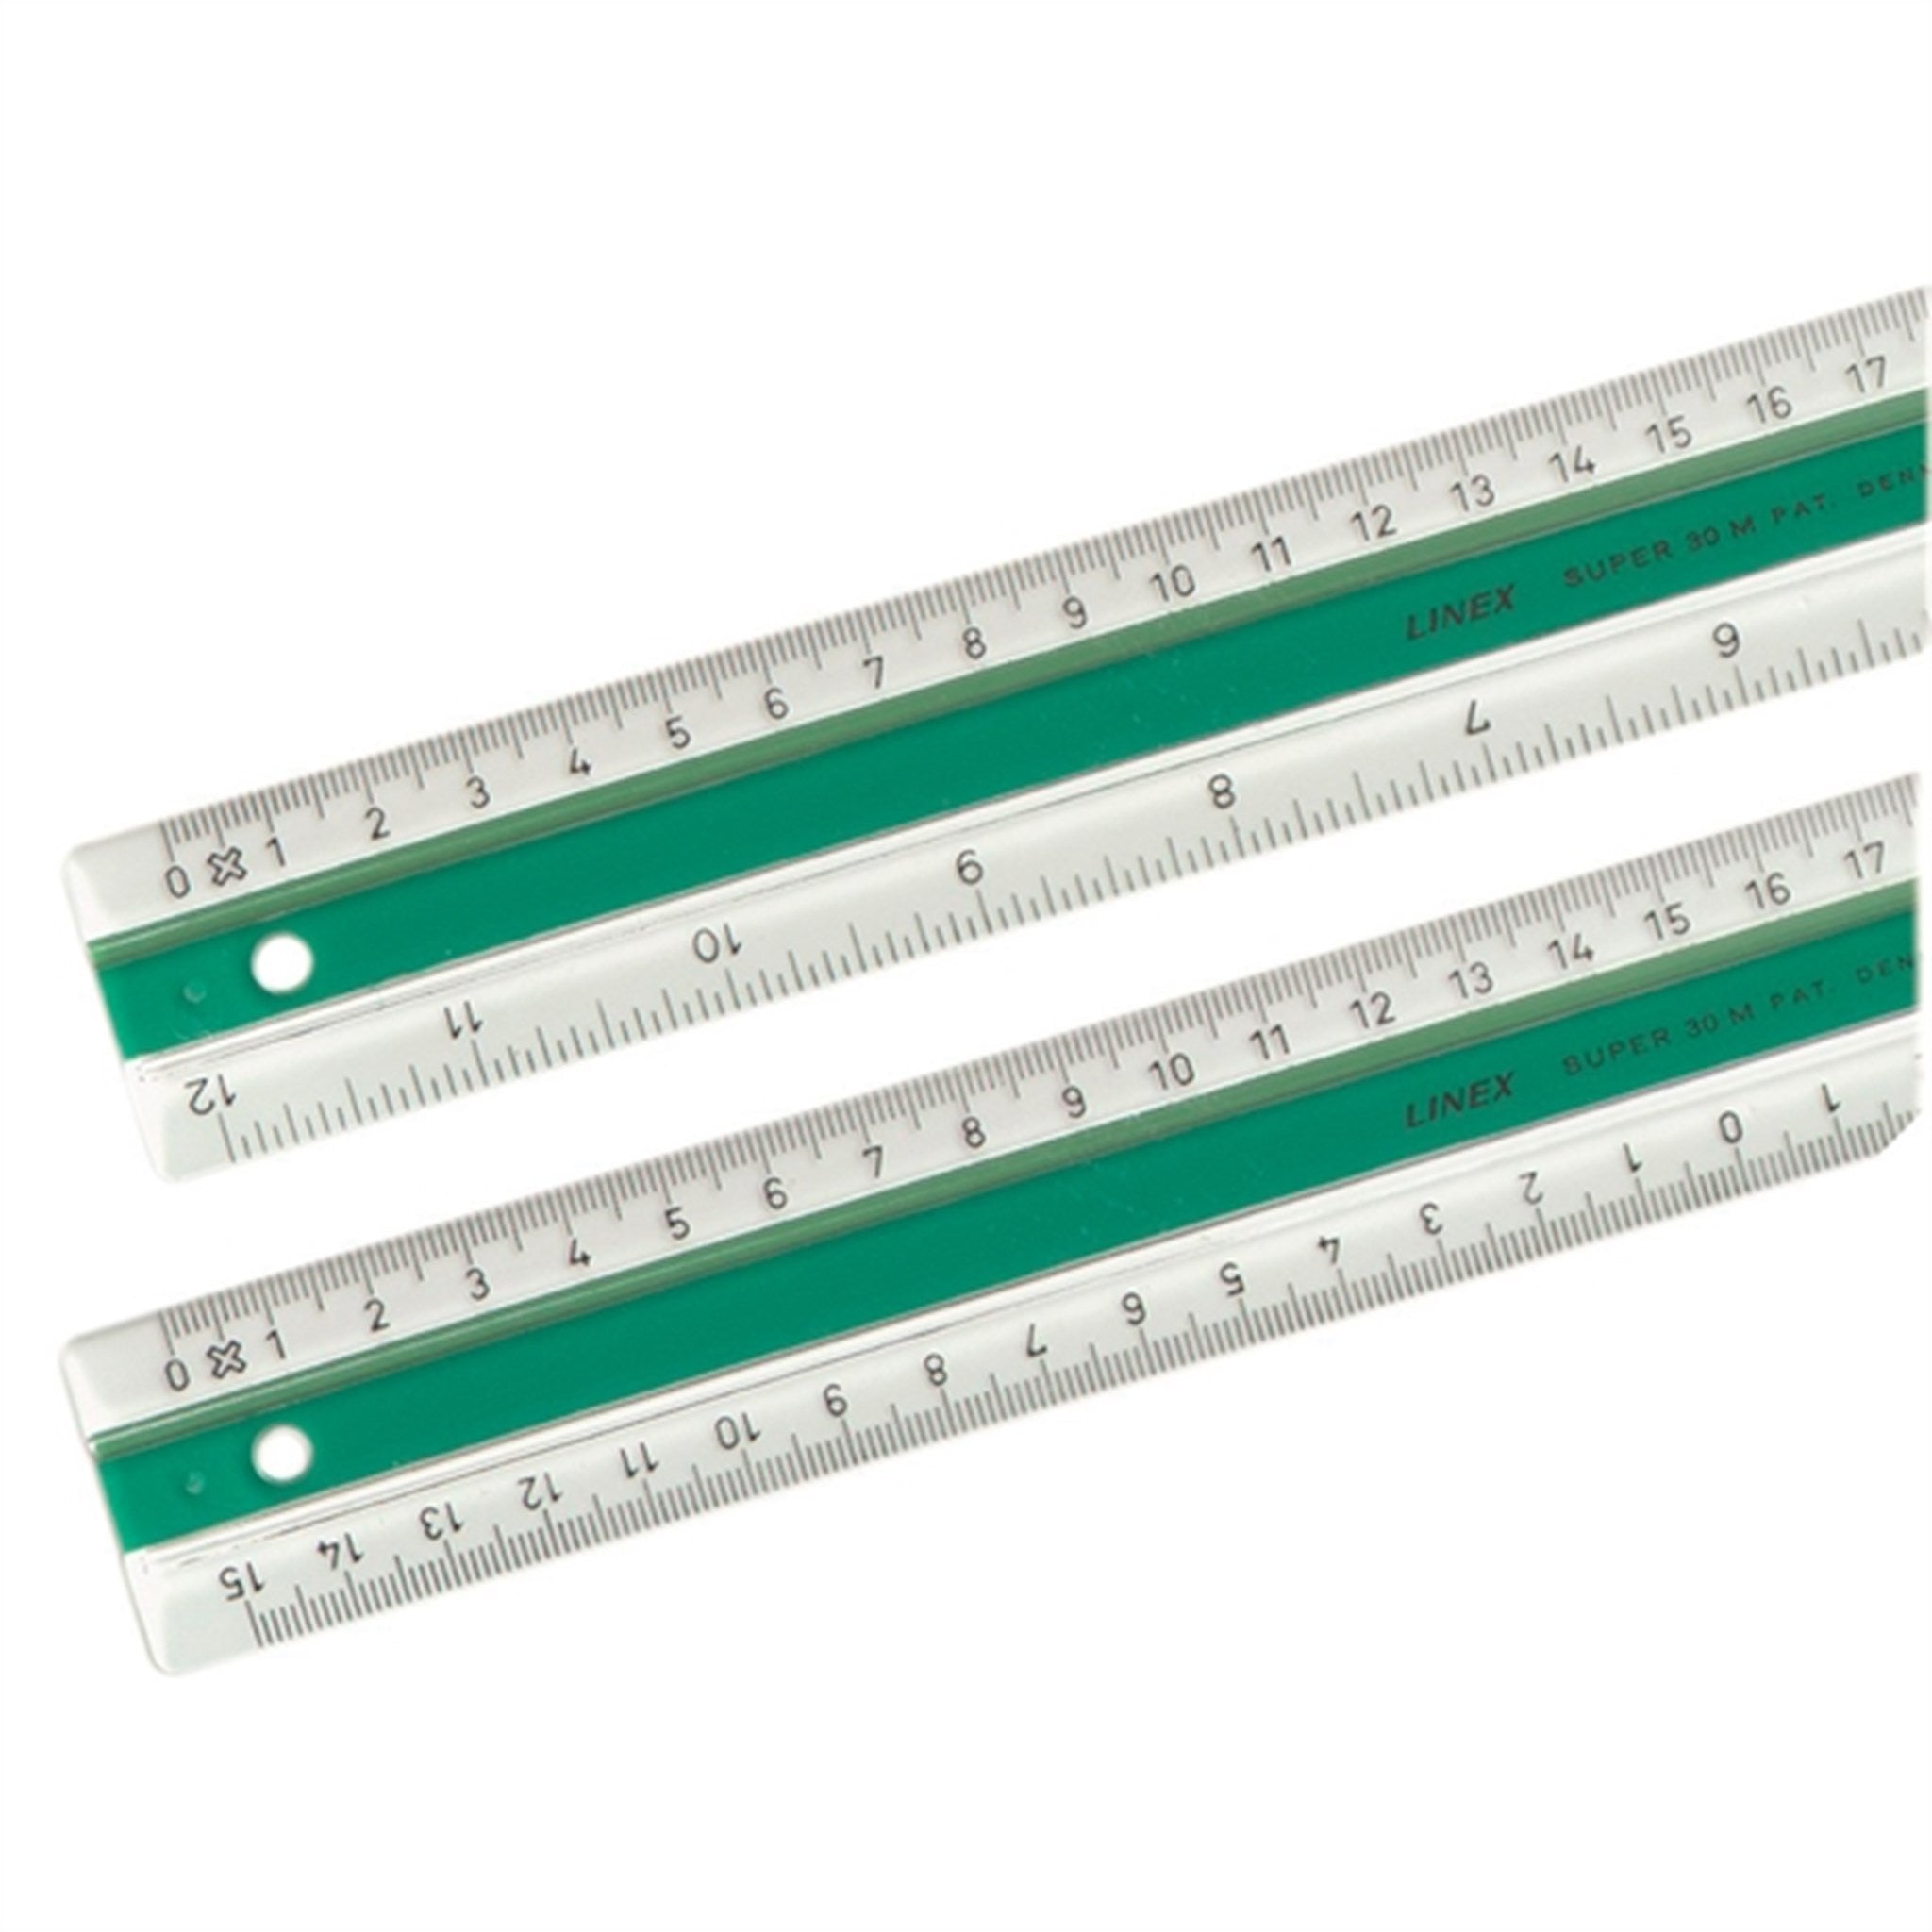 Linex Super Ruler 30 cm S30Mm Green 2